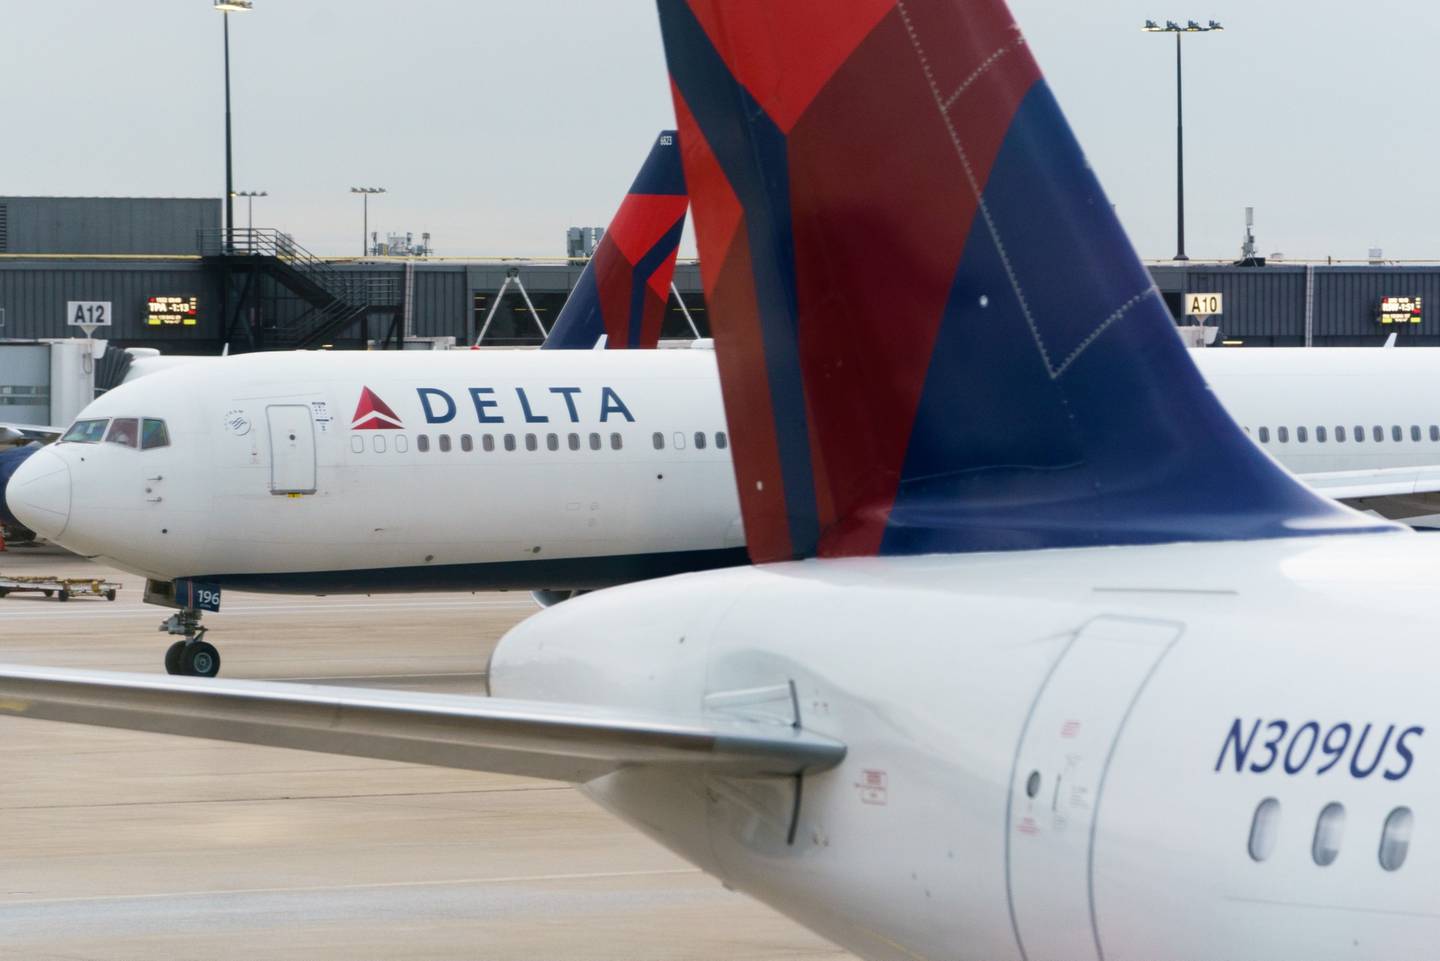 Aviones de Delta Air Lines en el Aeropuerto Internacional Hartsfield-Jackson de Atlanta (ATL) en Atlanta, Georgia, Estados Unidos